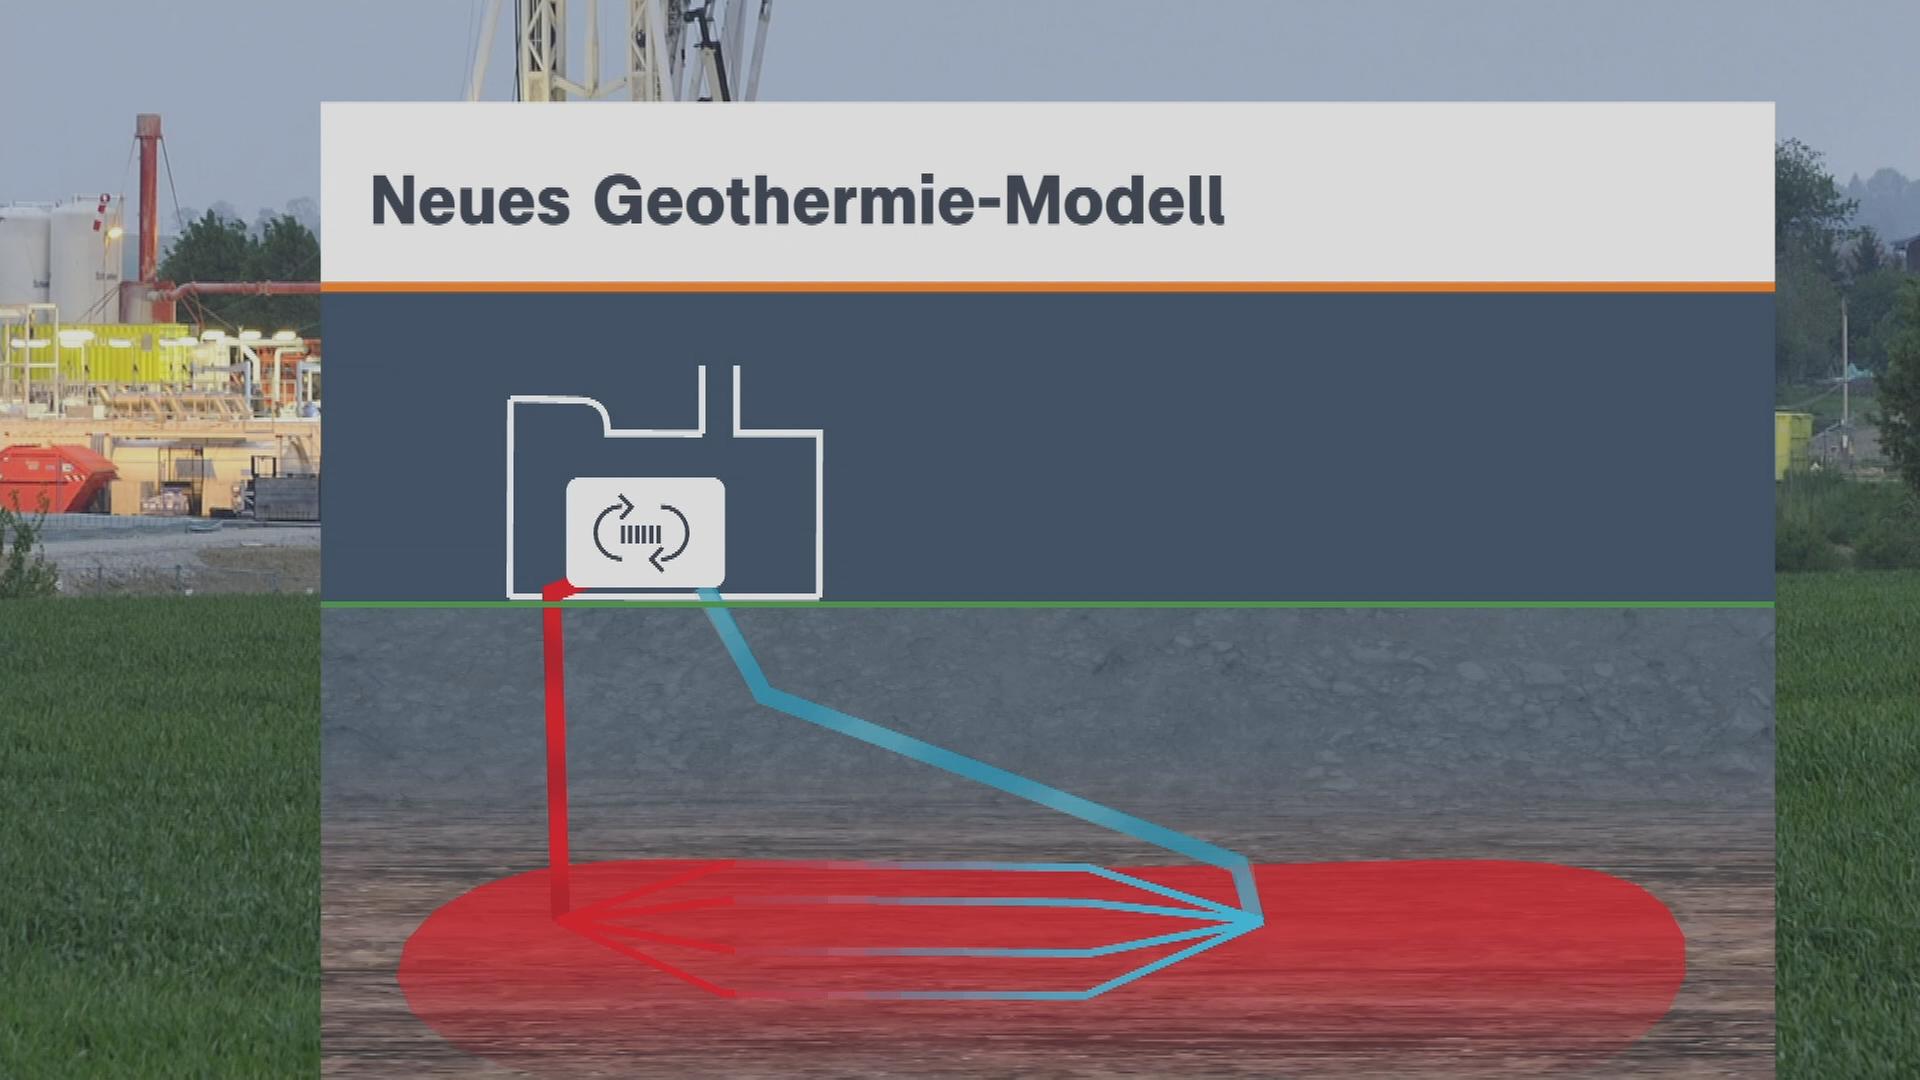 Auf dem Bild ist eine Grafik zu einer neuen Art Geothermie zu sehen.